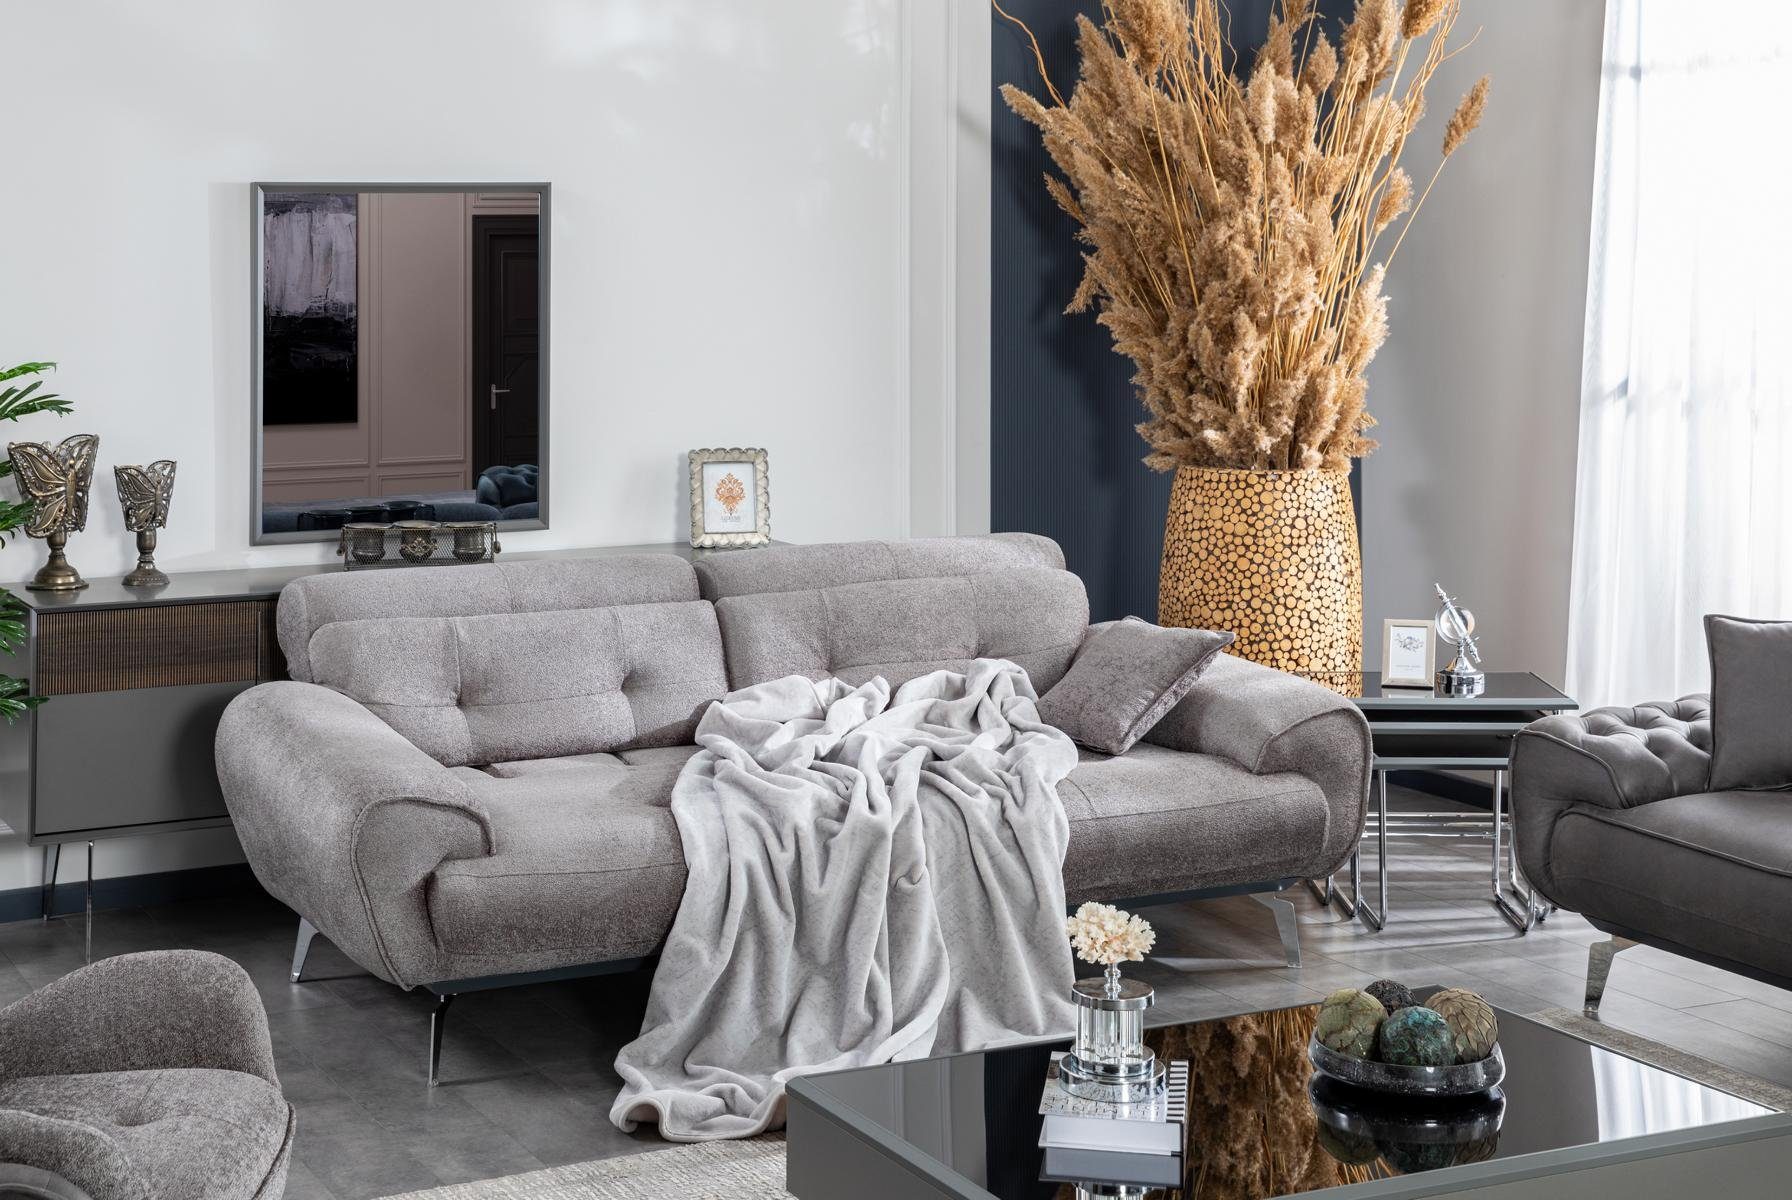 Stil Luxus Europe JVmoebel Made Italienische Sofa Wohnzimmer Sofa Design, in